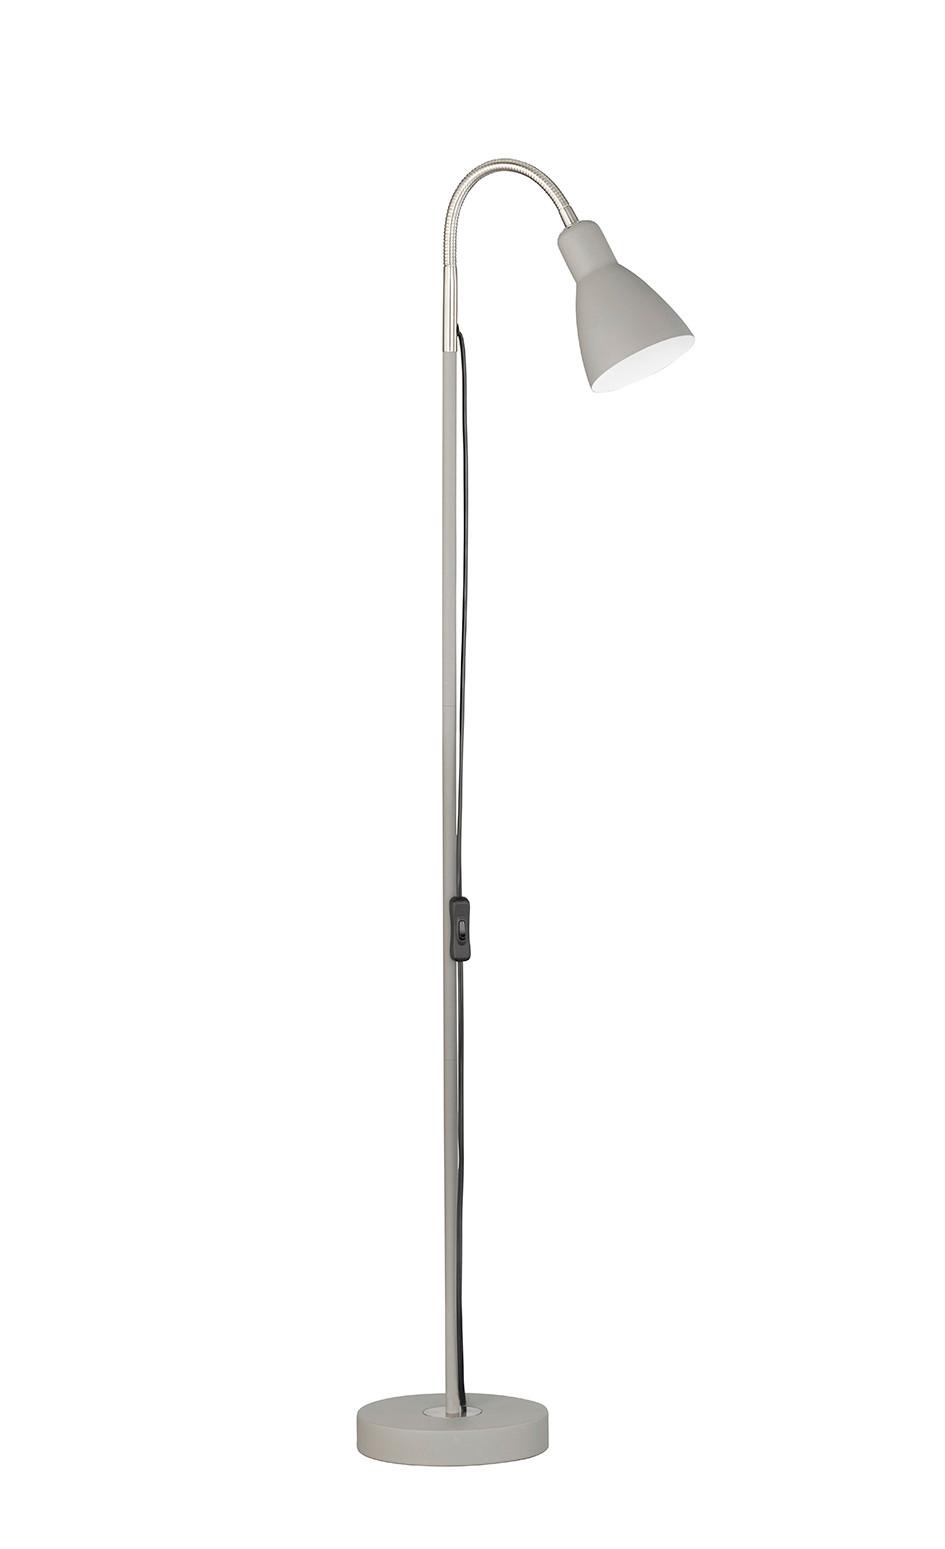 Stehlampe Lolland Grau/Nickelfarben mit Flexarm - Grau/Nickelfarben, Basics, Metall (18/121cm) - Fischer & Honsel